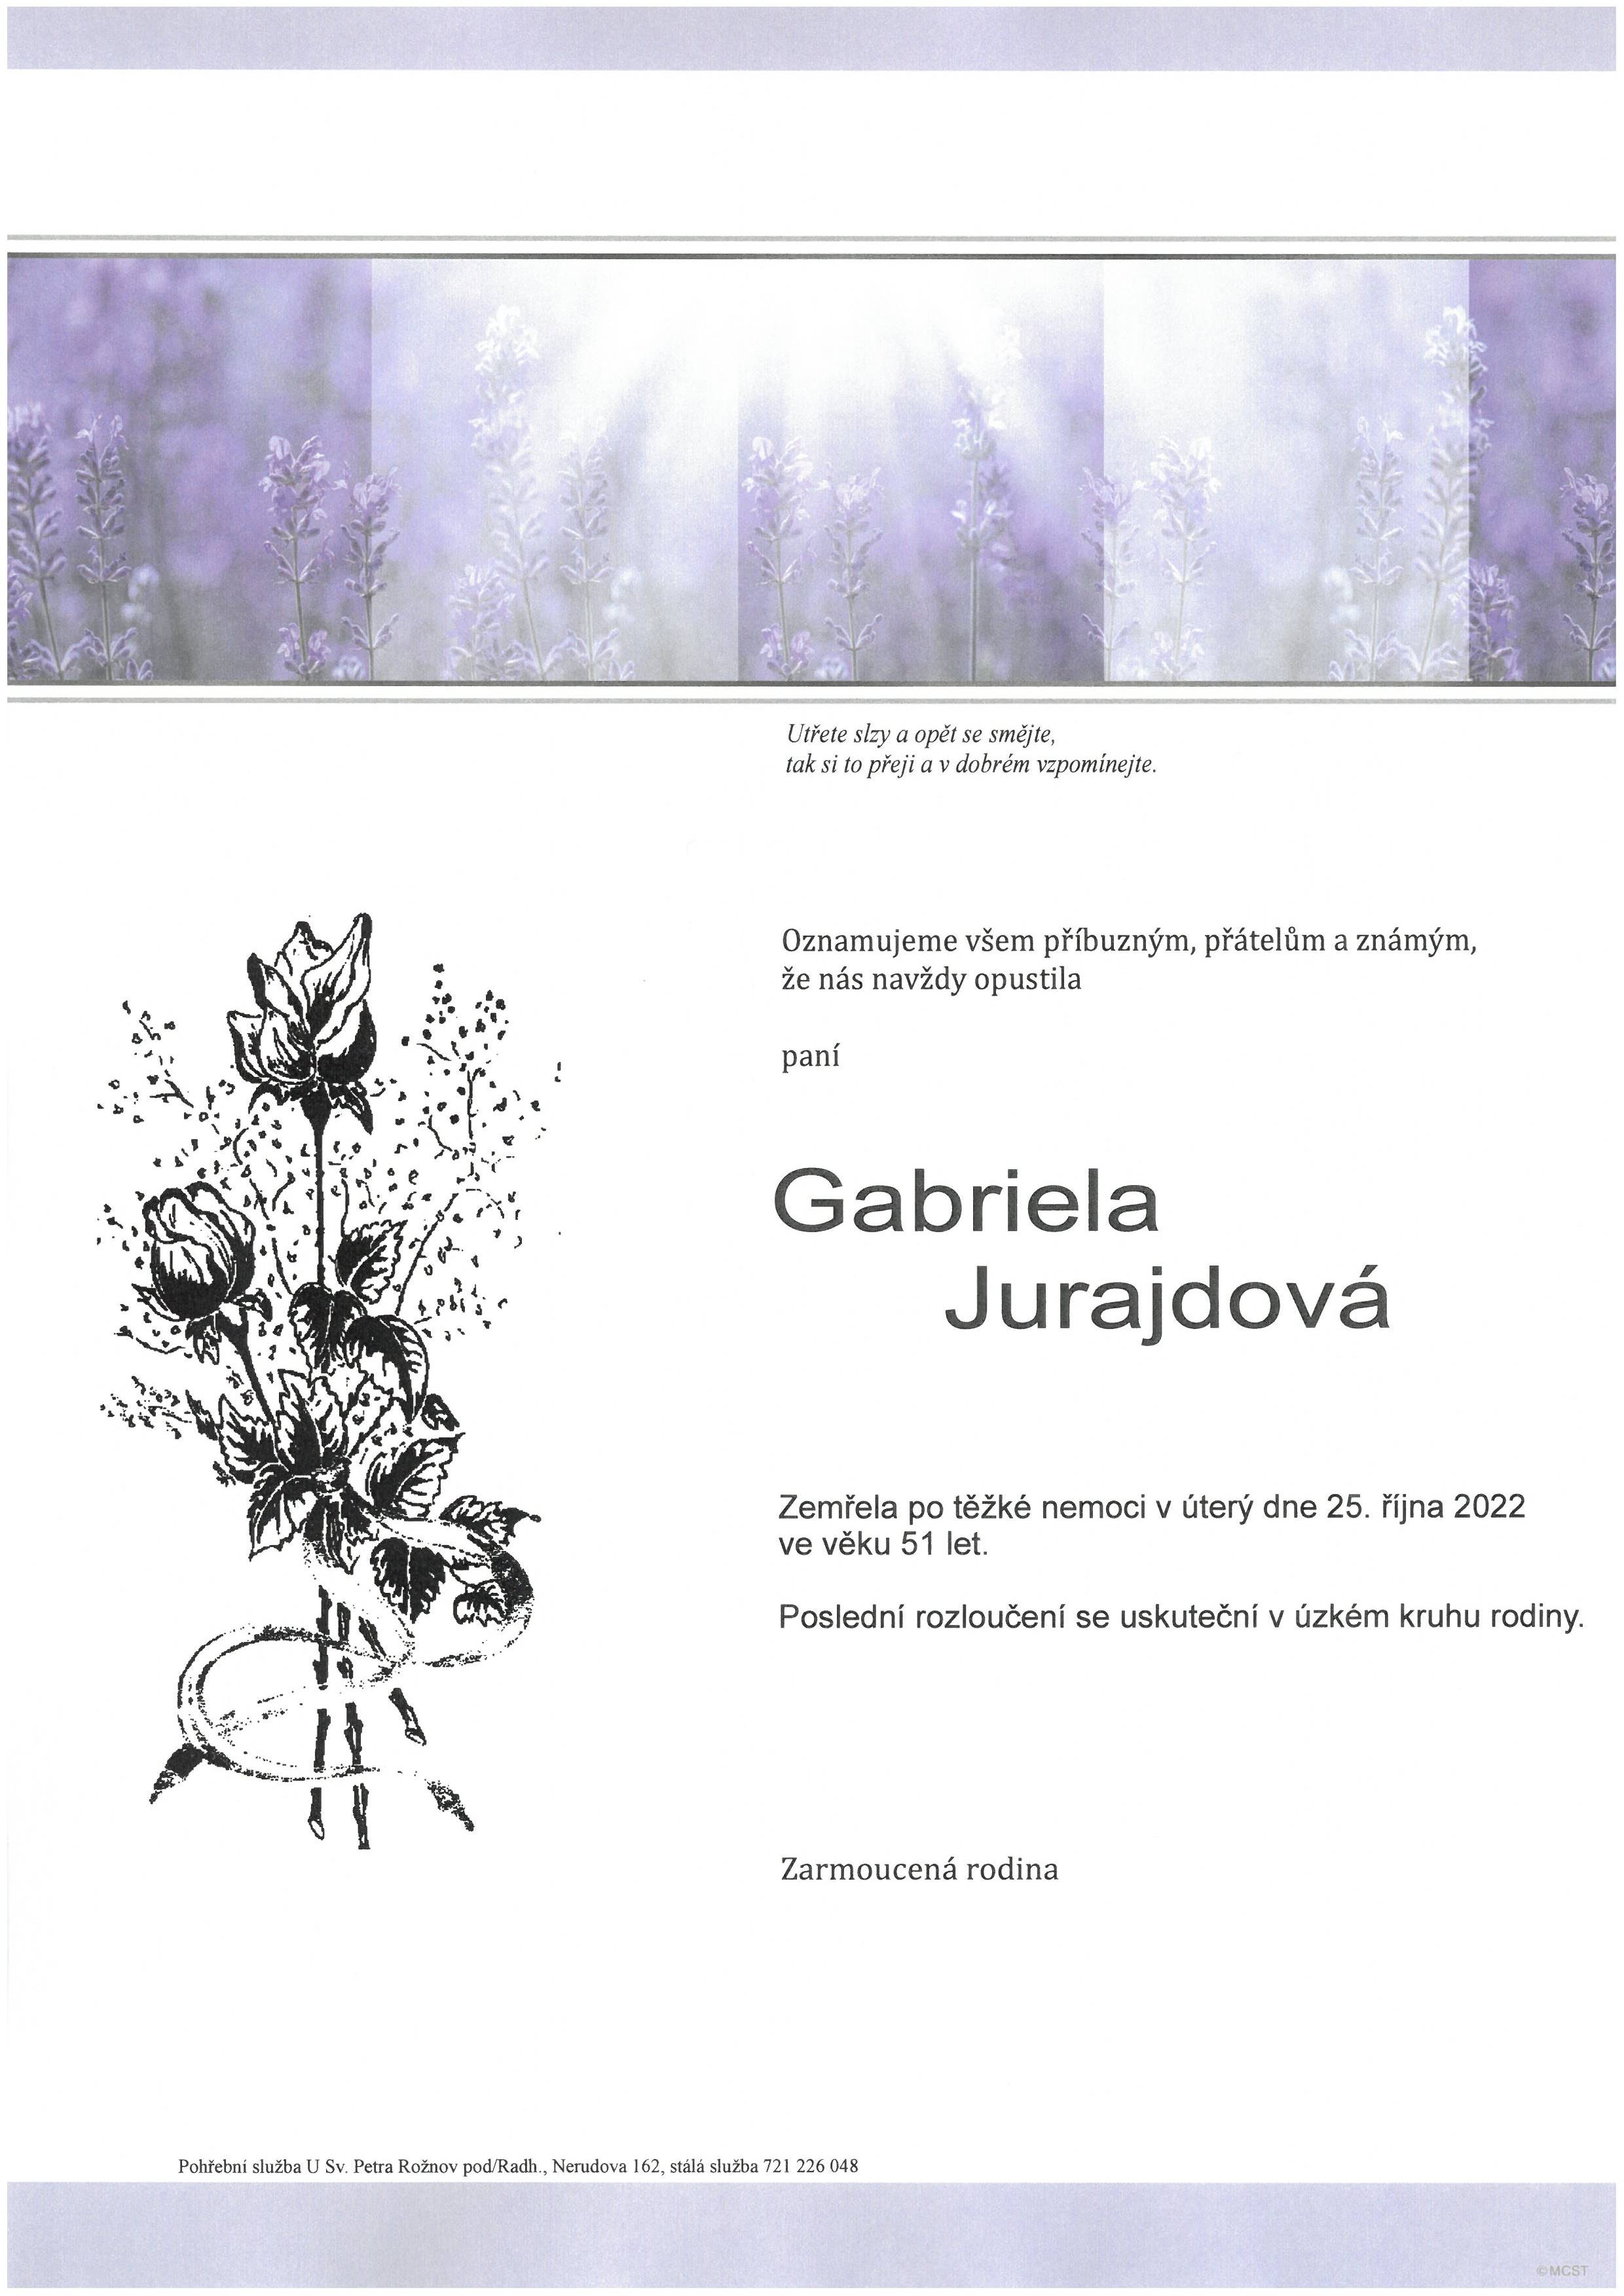 Gabriela Jurajdová